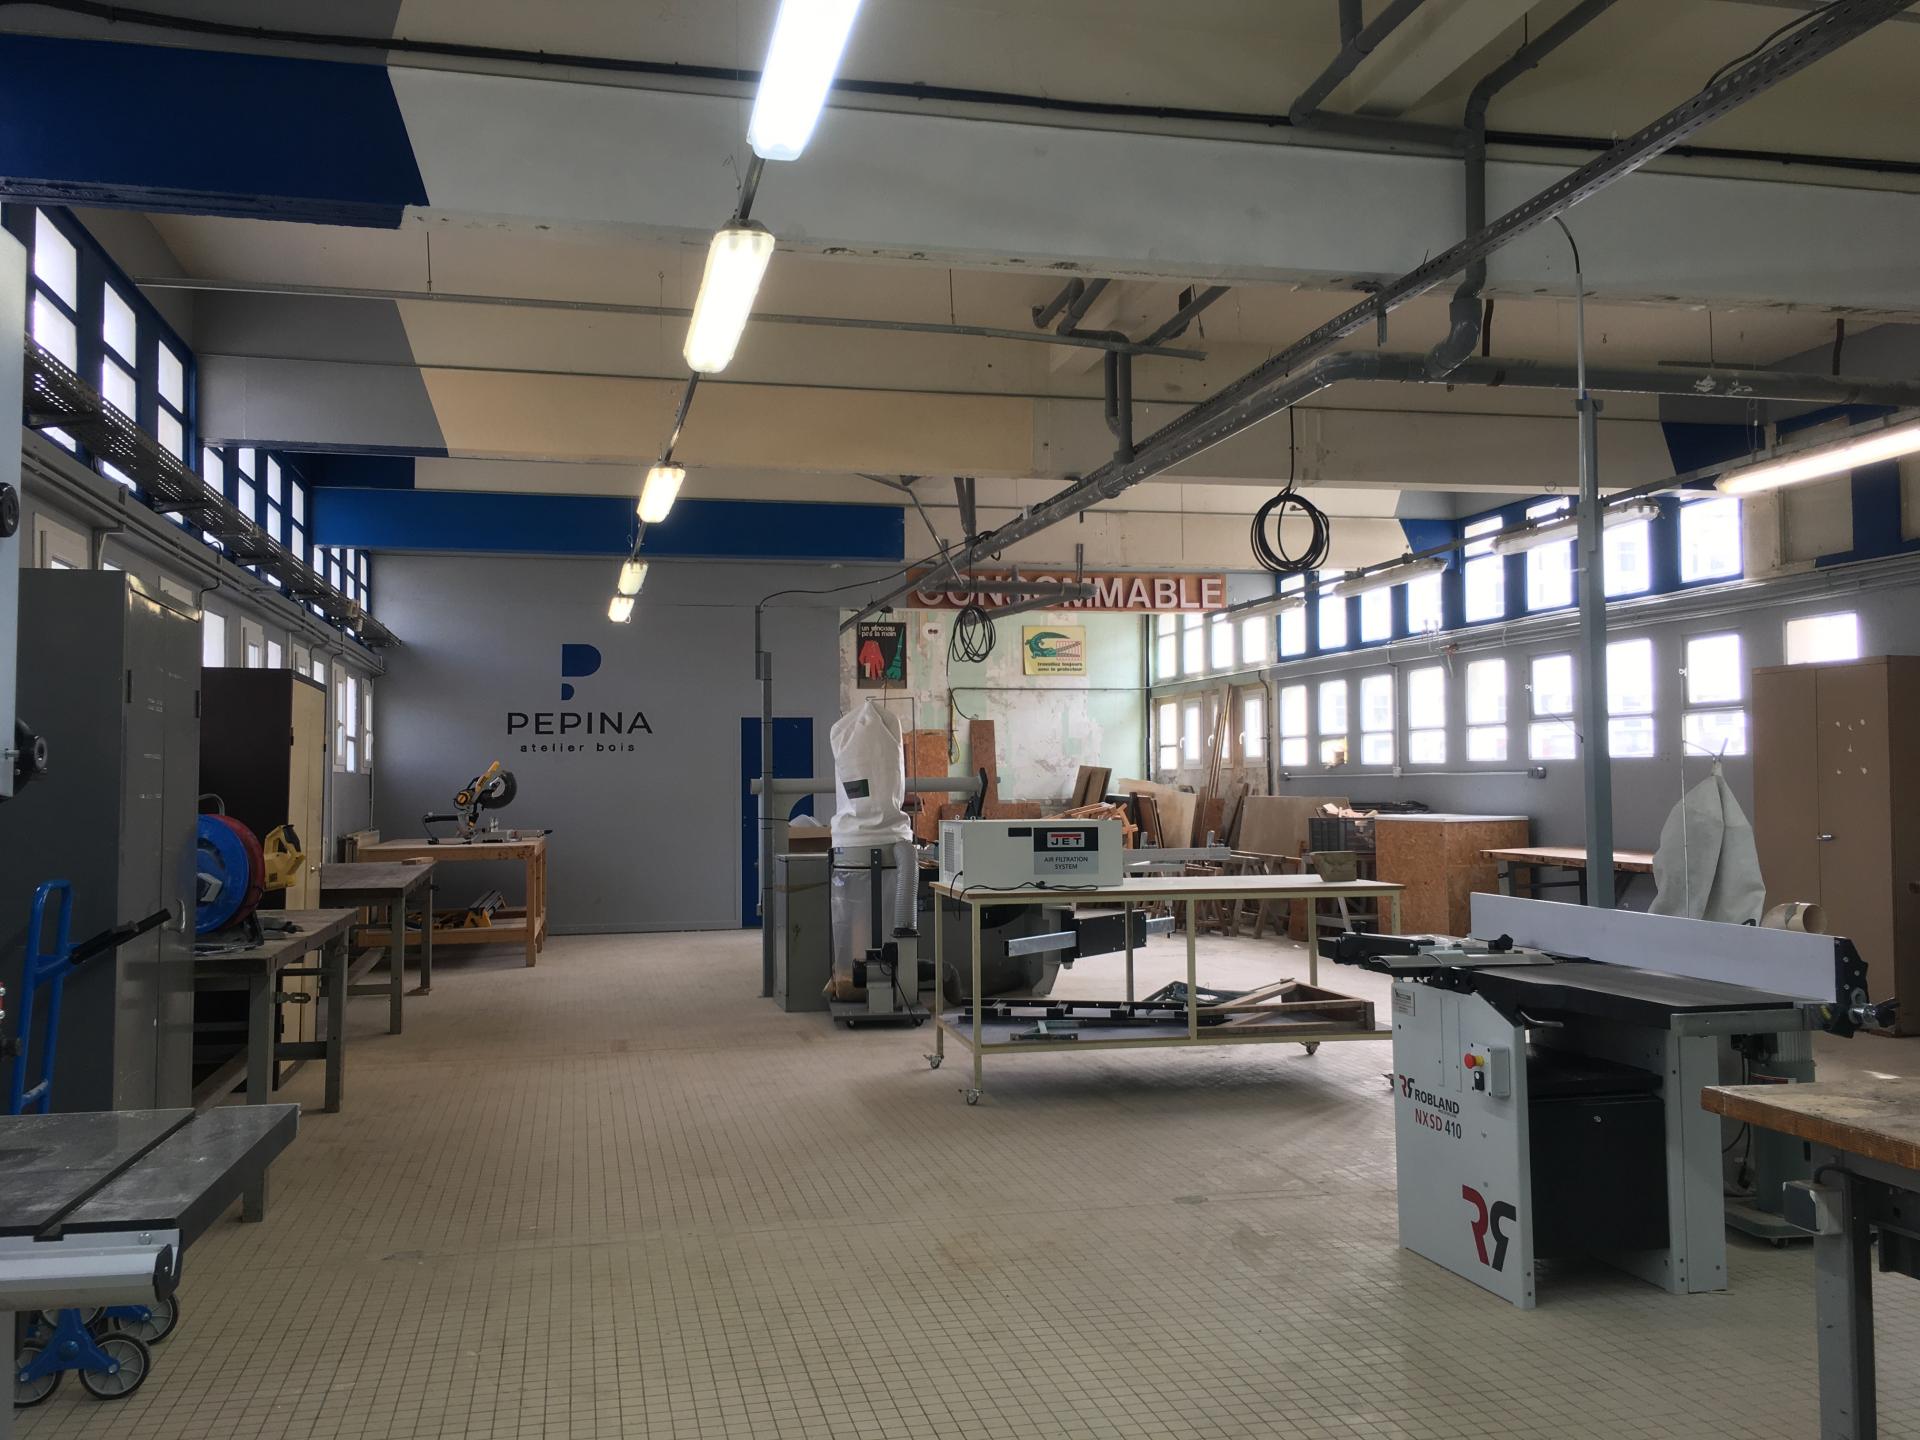 PENSER LOCAL : Coworking créatif, les ateliers partagés Pépina au service de l'artisanat angevin